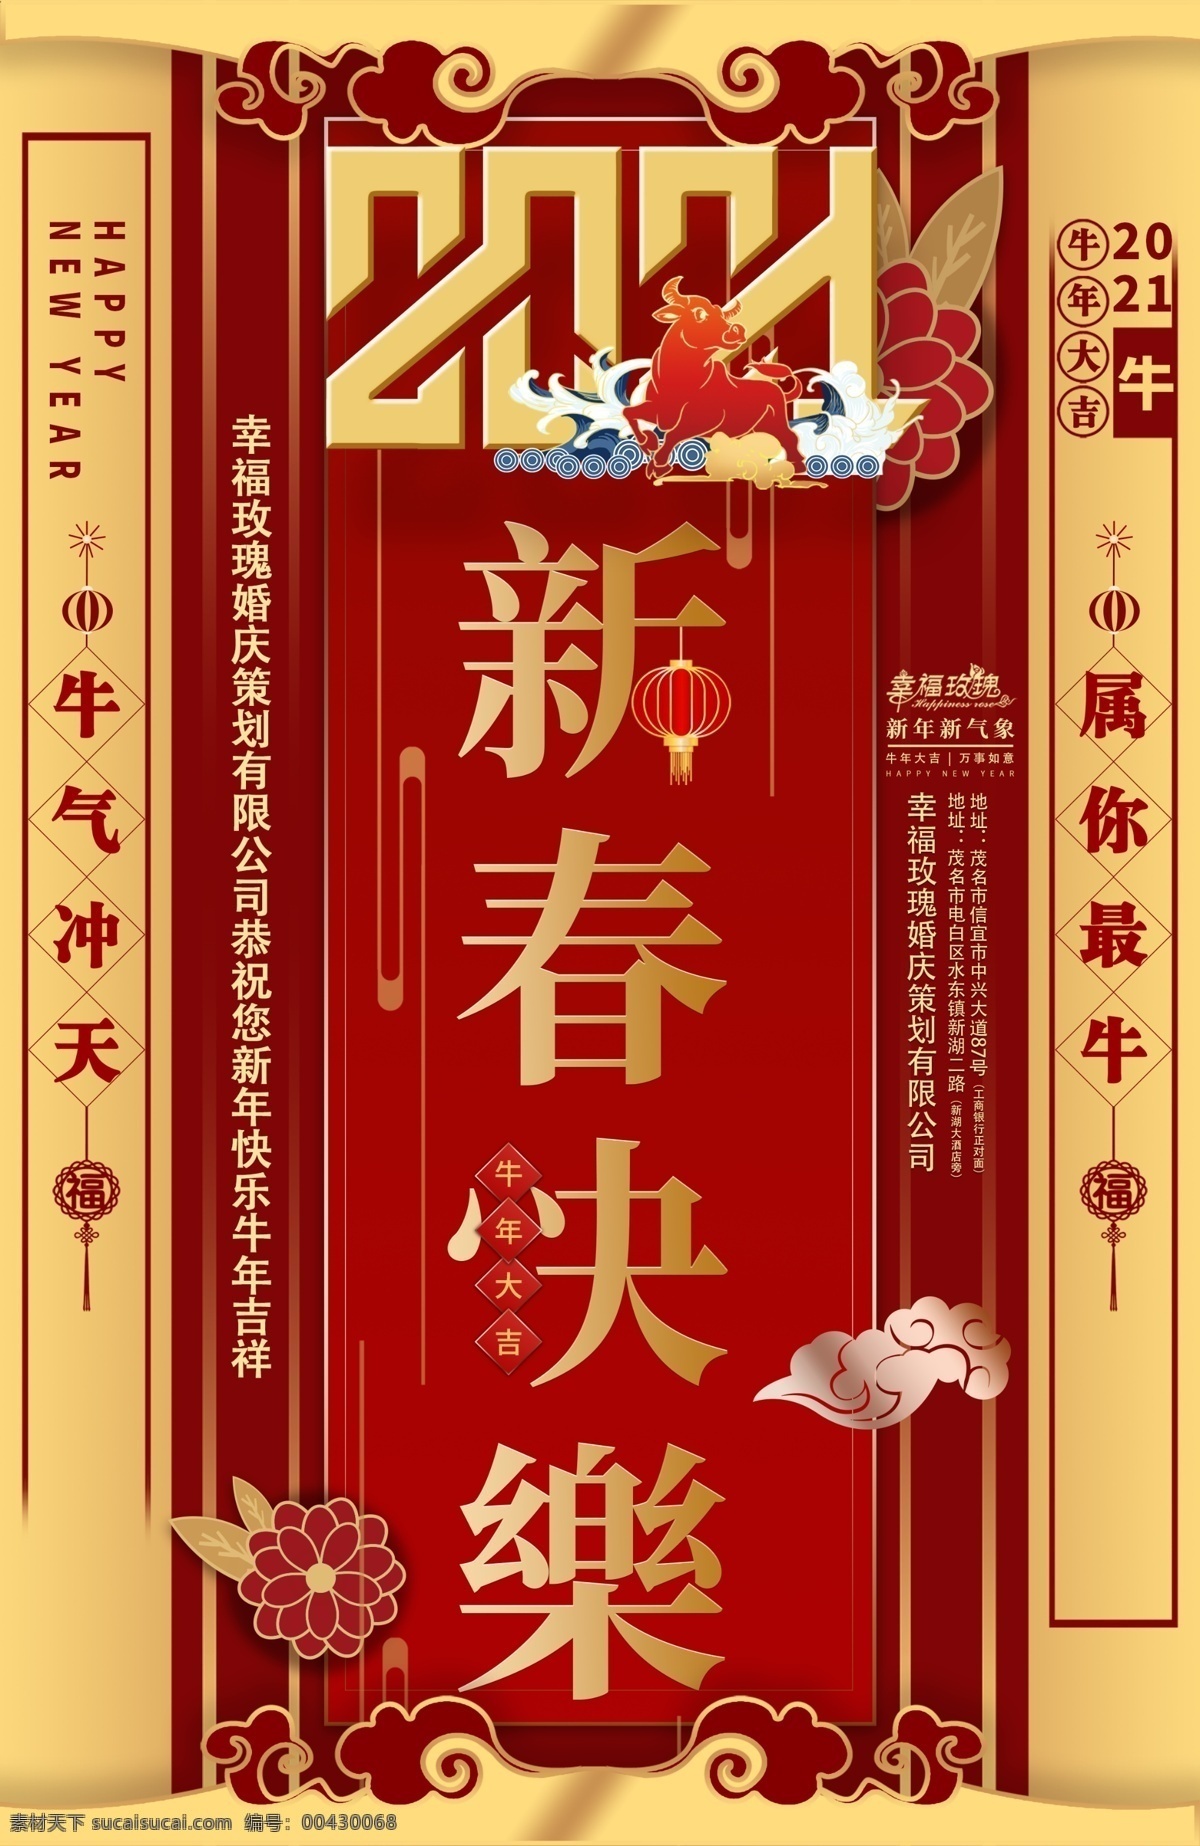 新年快乐图片 2021新年 海报 2021 牛 牛年 中国年 新年快乐 中国元素 节日 新春快乐 新年